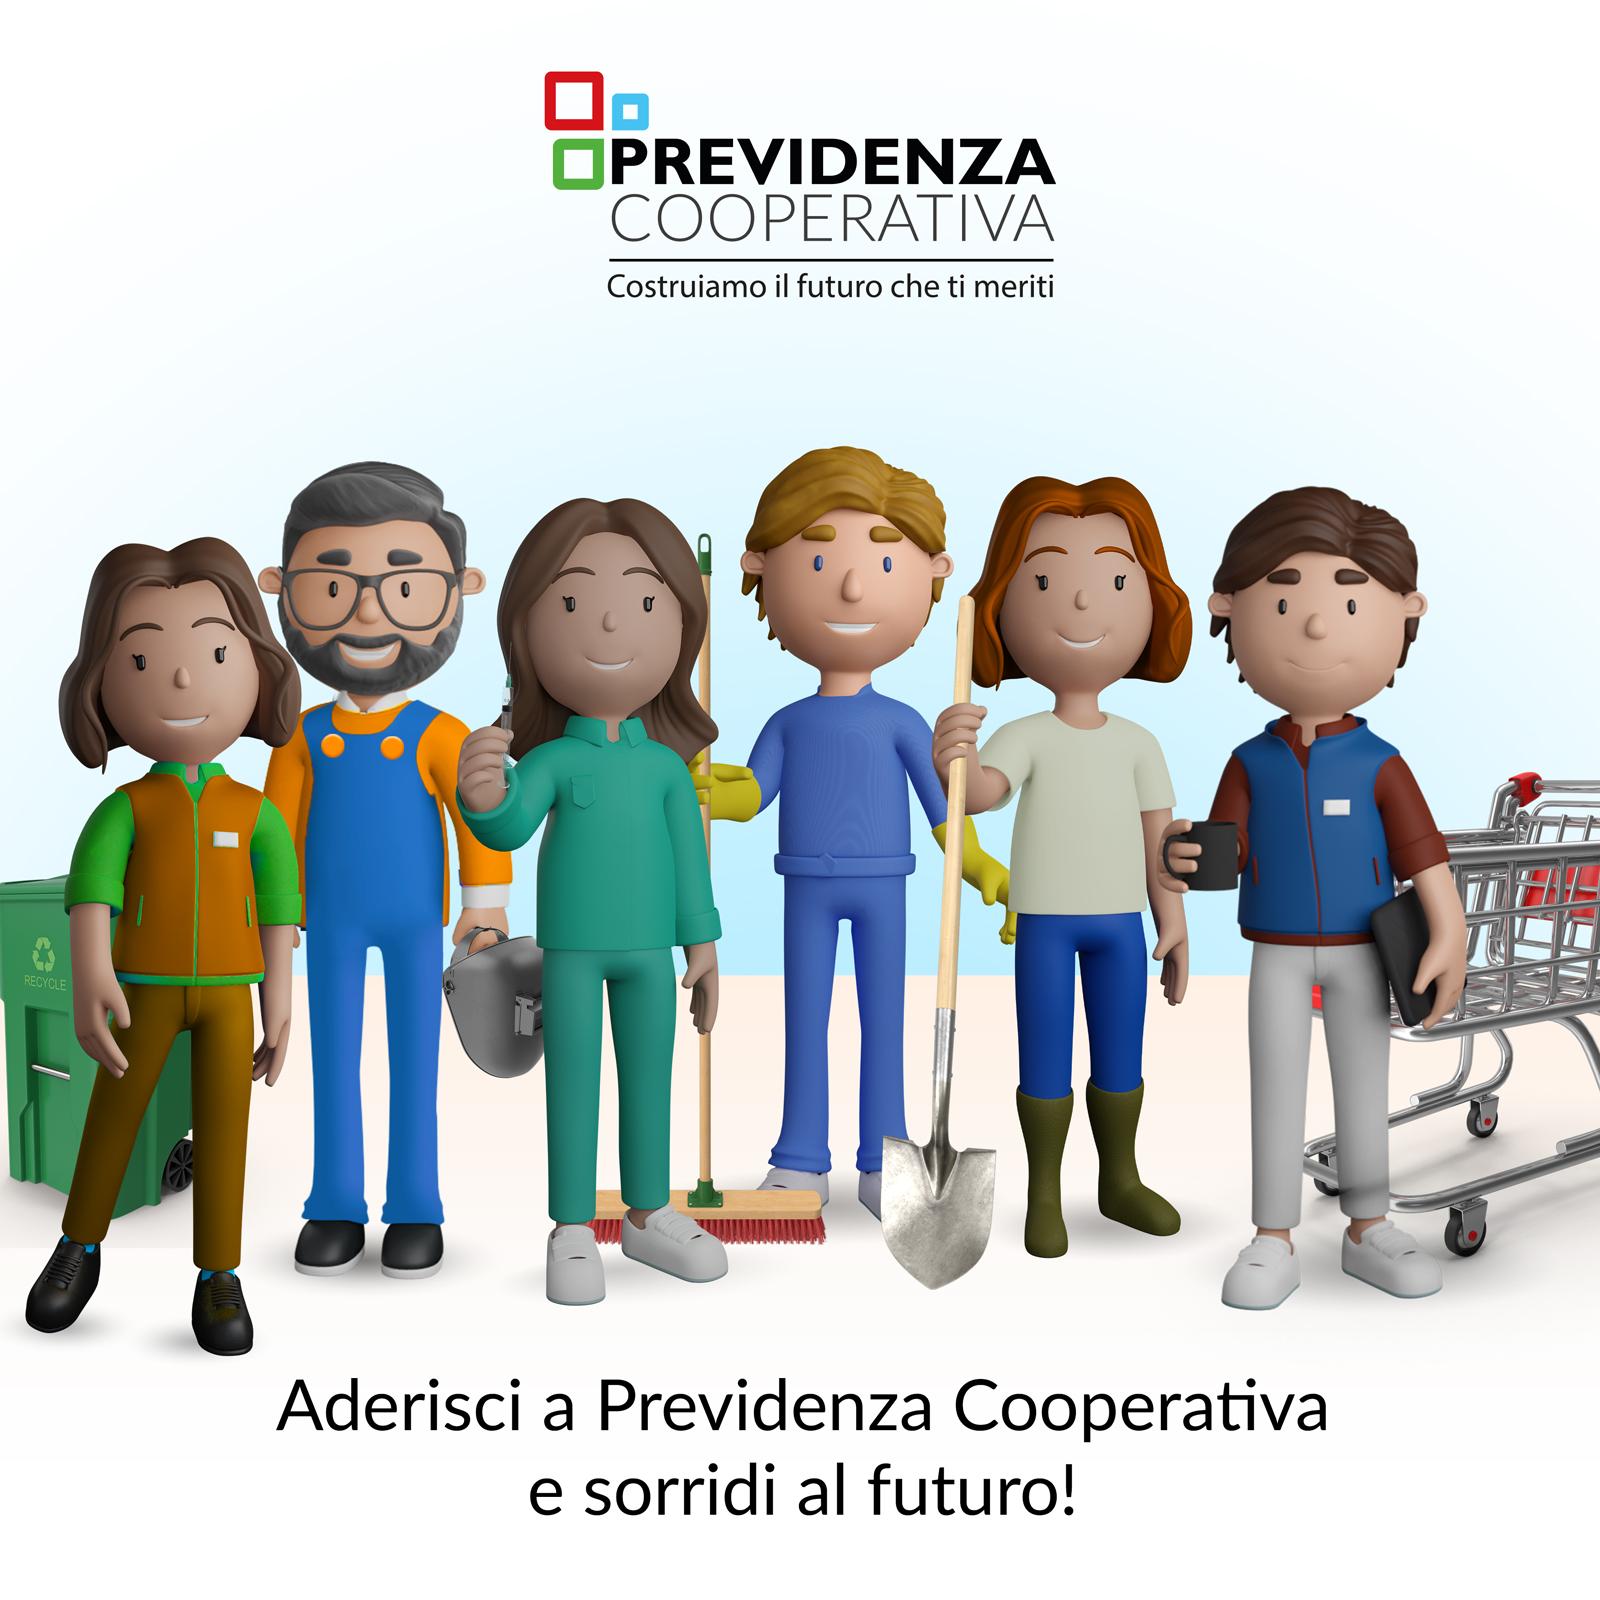 Previdenza Cooperativa: una campagna di comunicazione per sensibilizzare i lavoratori sul tema della previdenza complementare